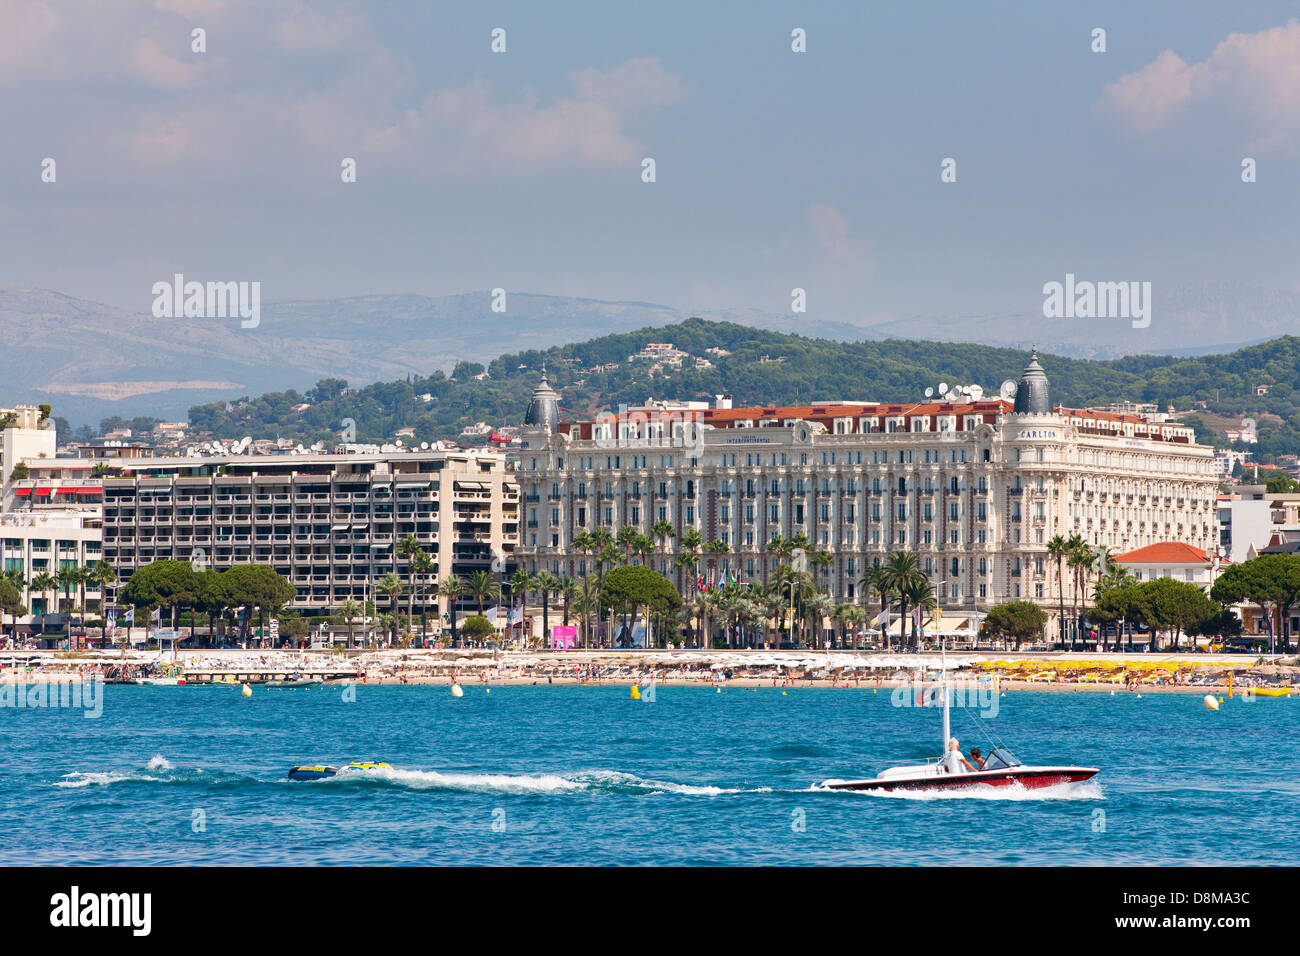 The famous hotel Carlton, Boulevard de la Croisette along the waterfront, Cannes, France Stock Photo